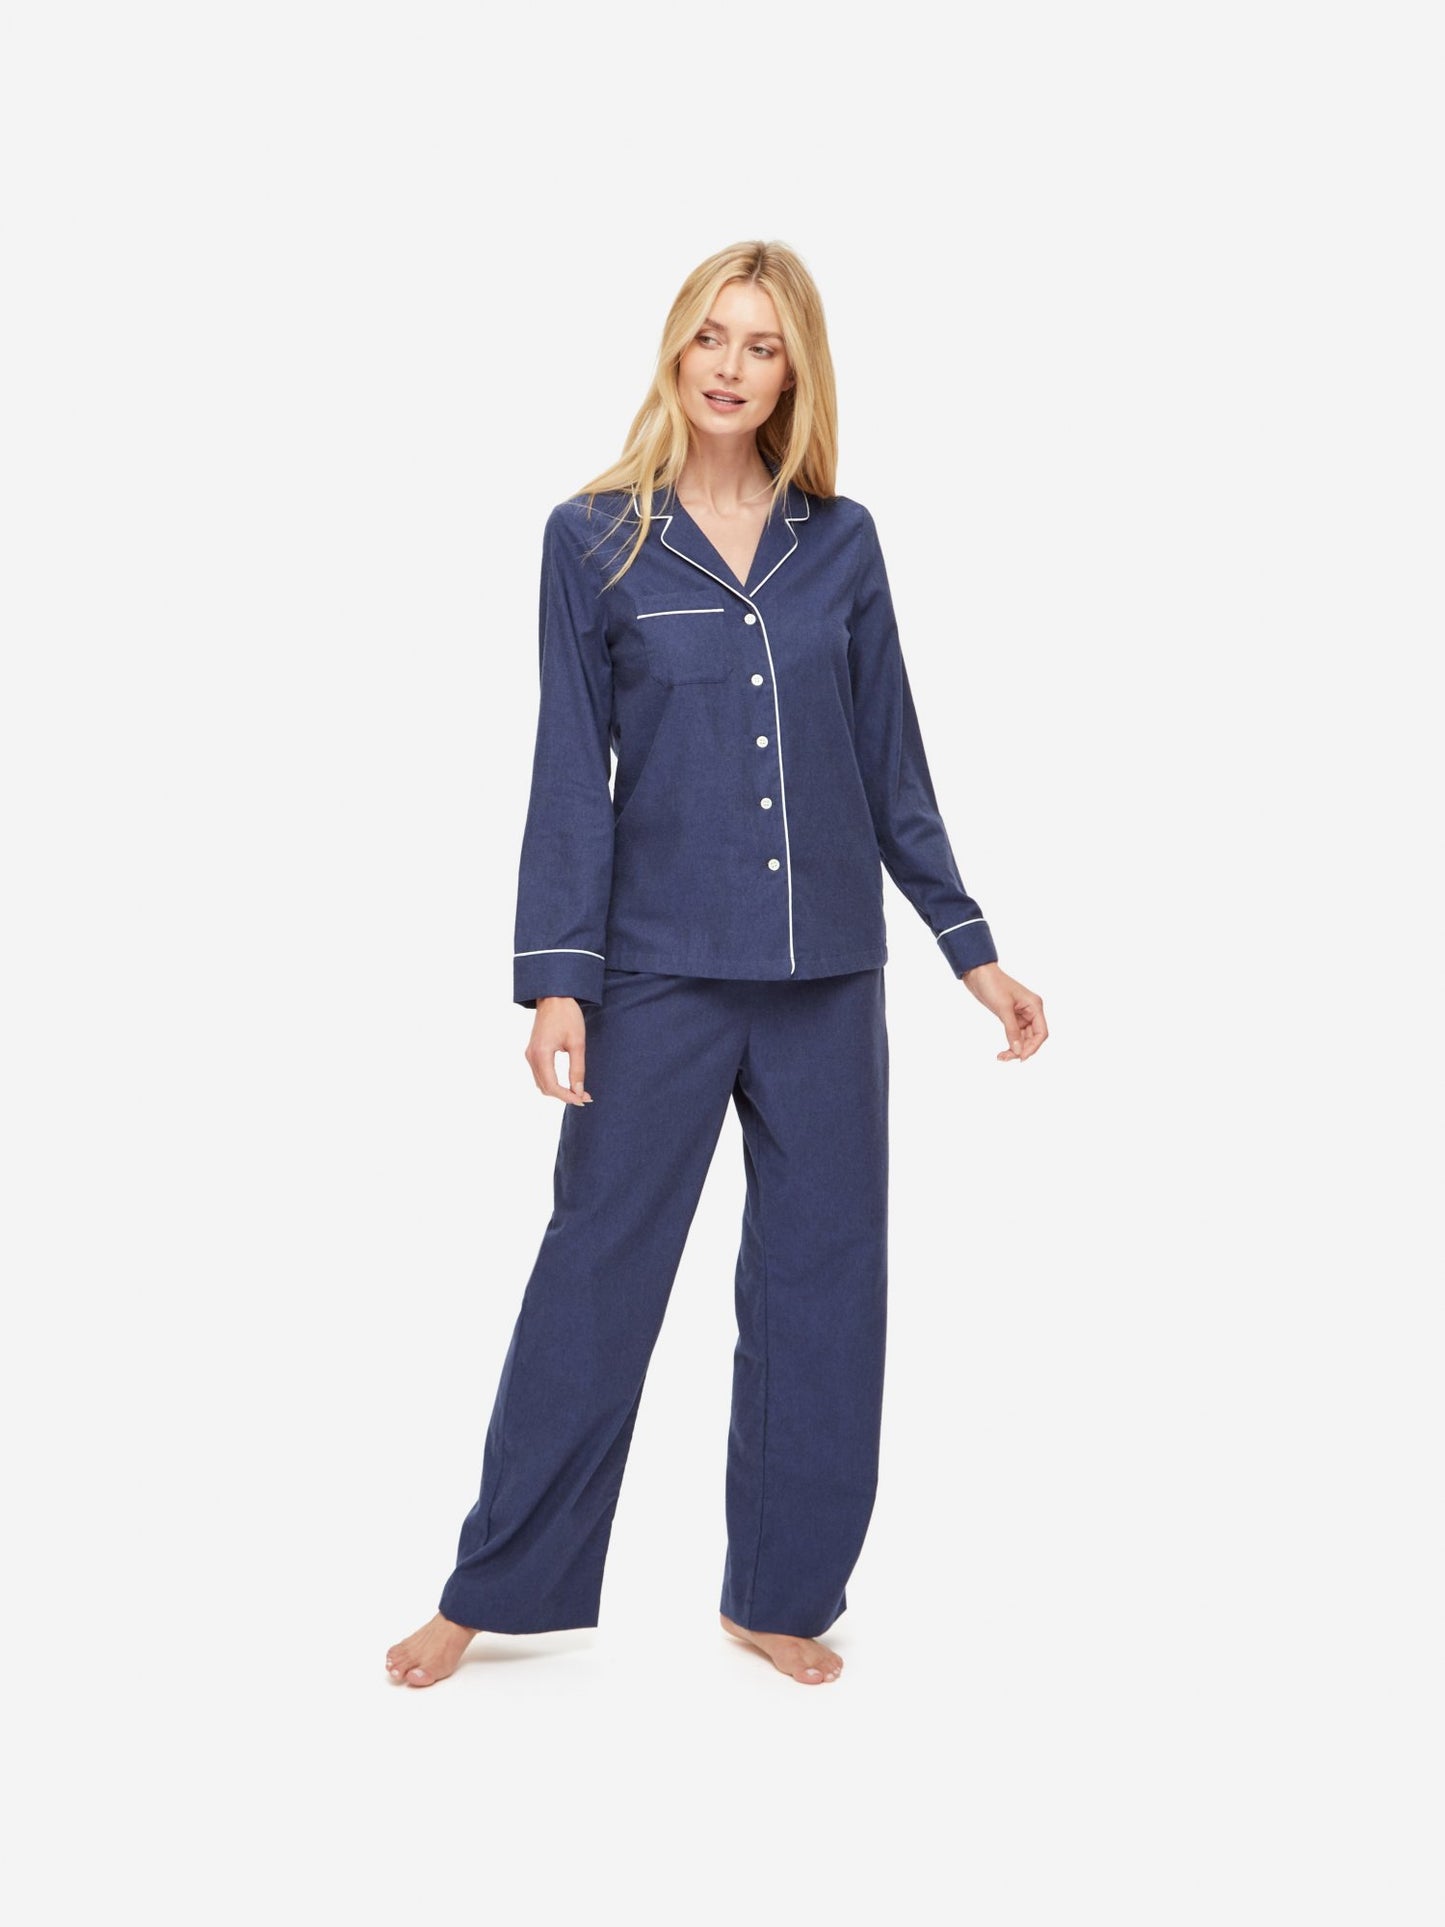 Balmoral Pyjamas - Navy